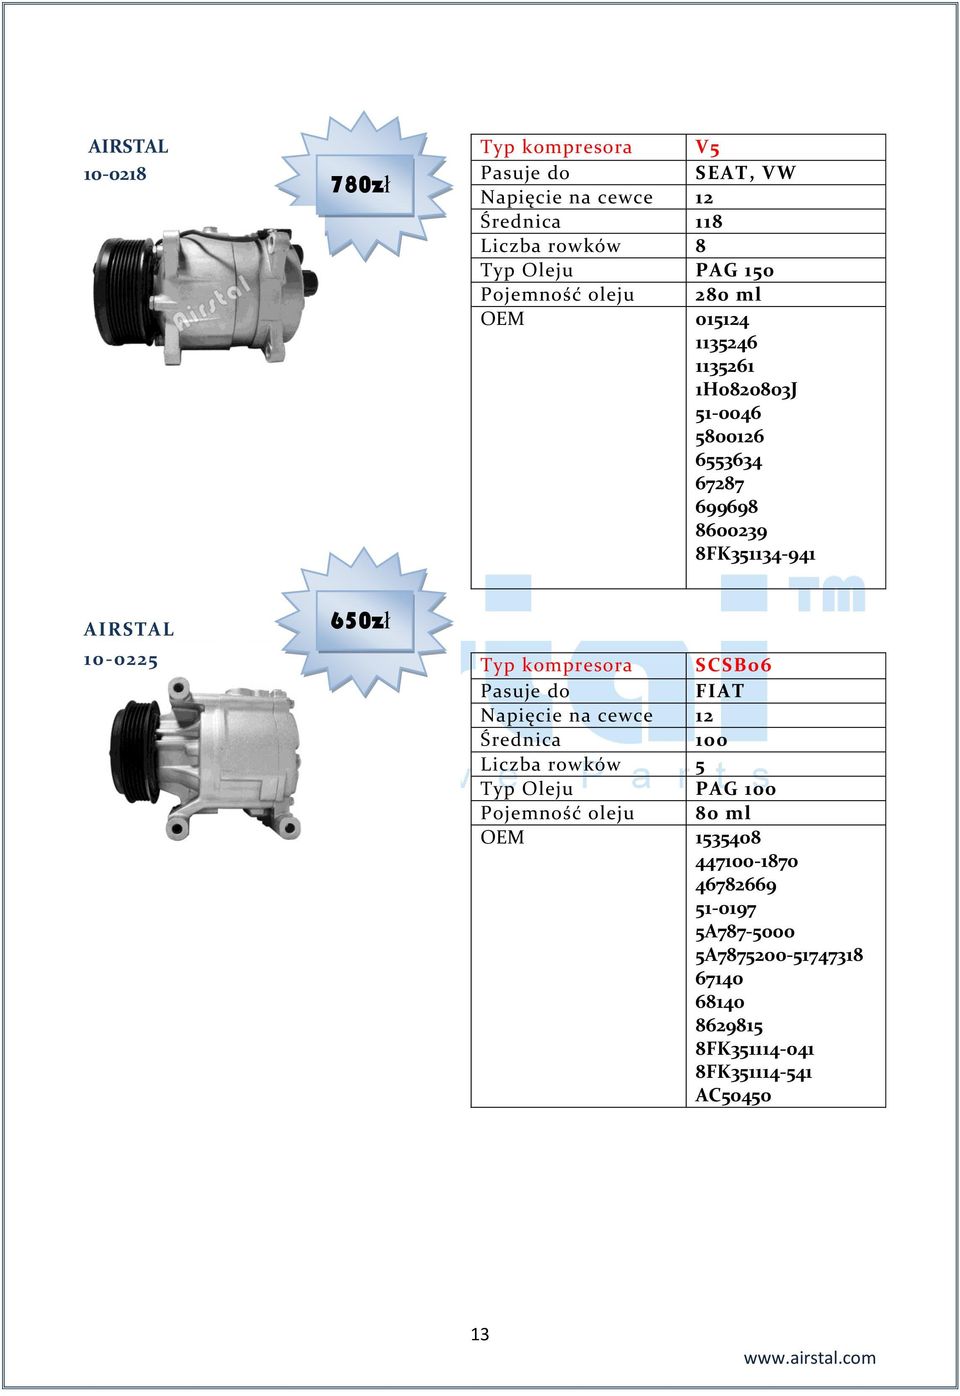 650zł Typ kompresora SCSB06 FIAT Średnica 100 Liczba rowków 5 Pojemność oleju 80 ml OEM 1535408 447100-1870